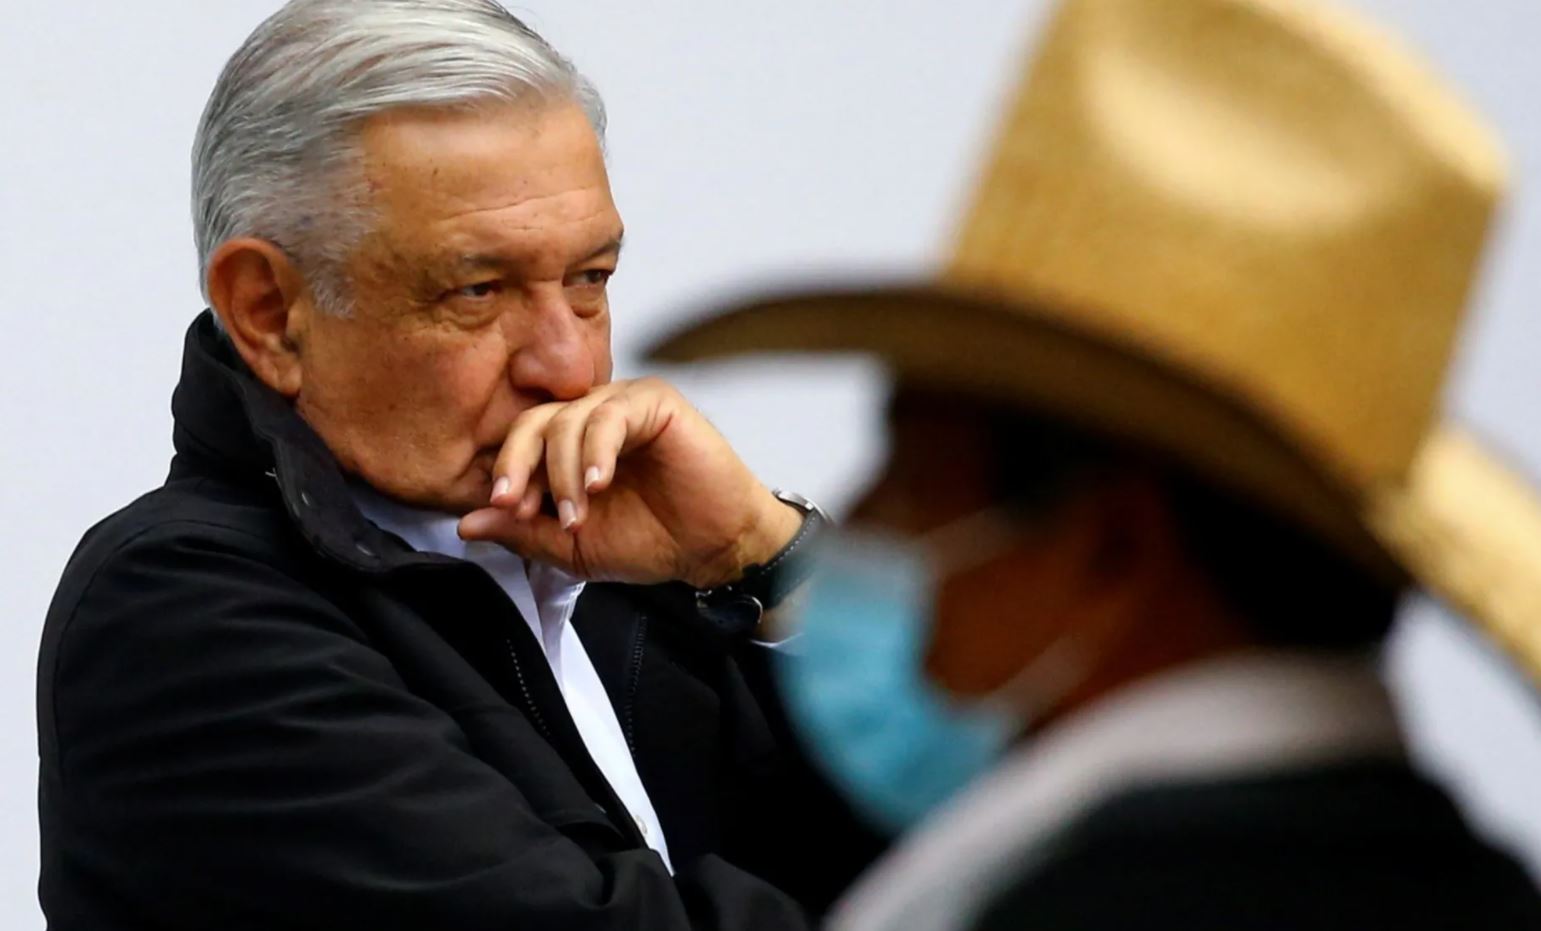 ANÁLISIS: México en el camino del autoritarismo